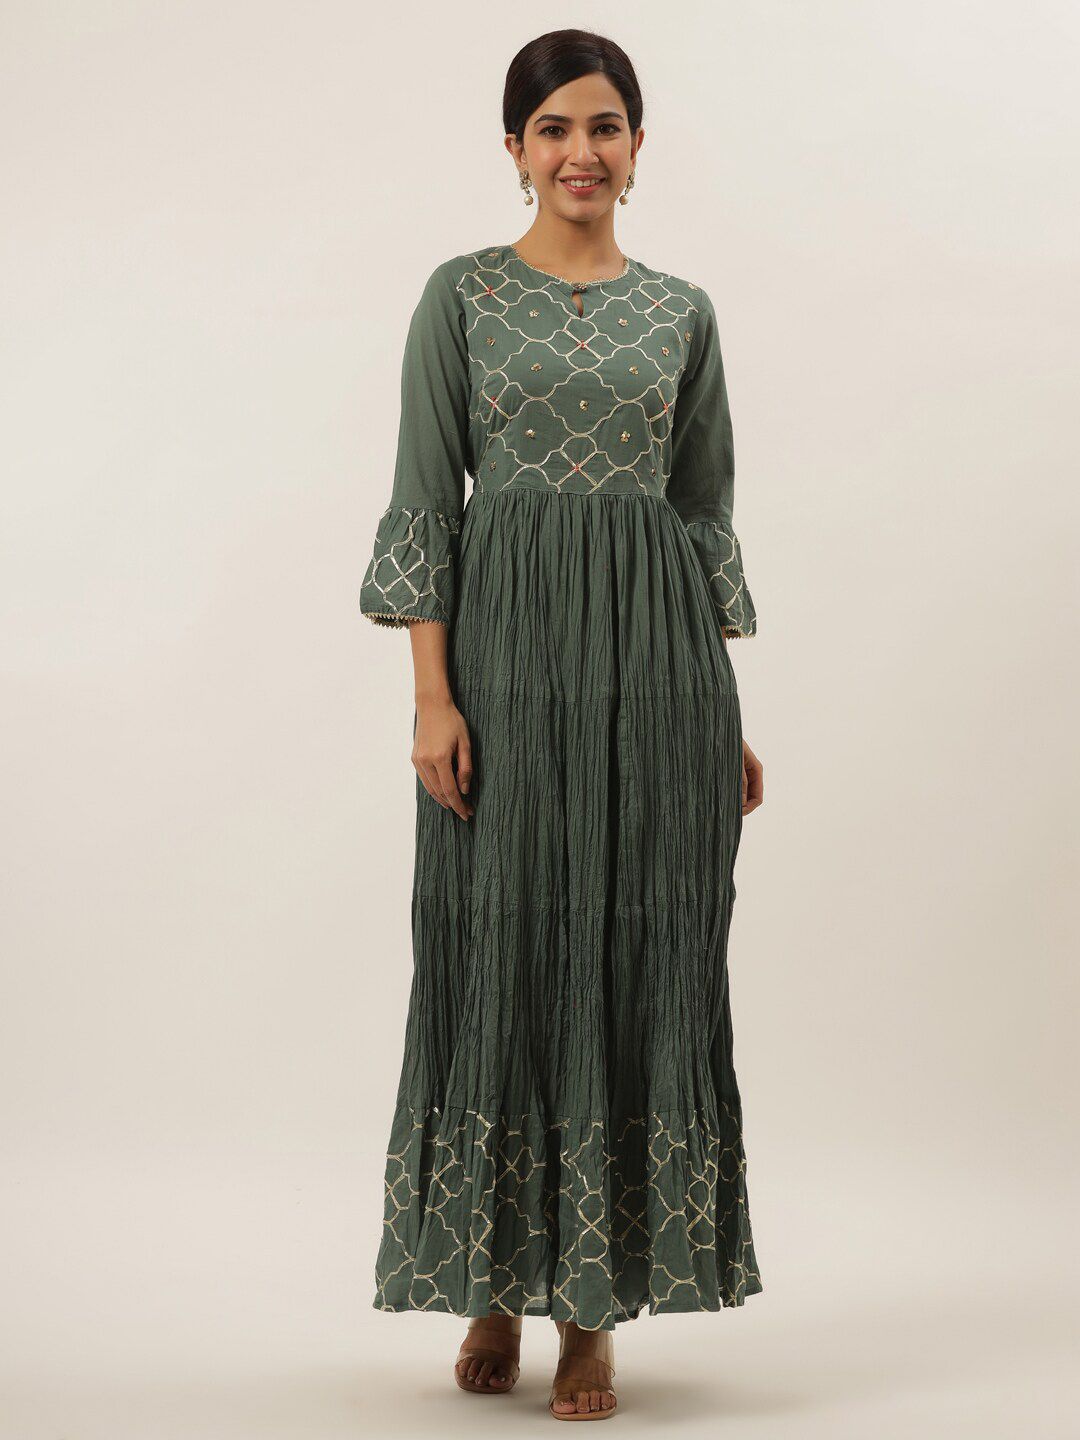 Yufta Grey Ethnic Motifs Ethnic Maxi Dress Price in India